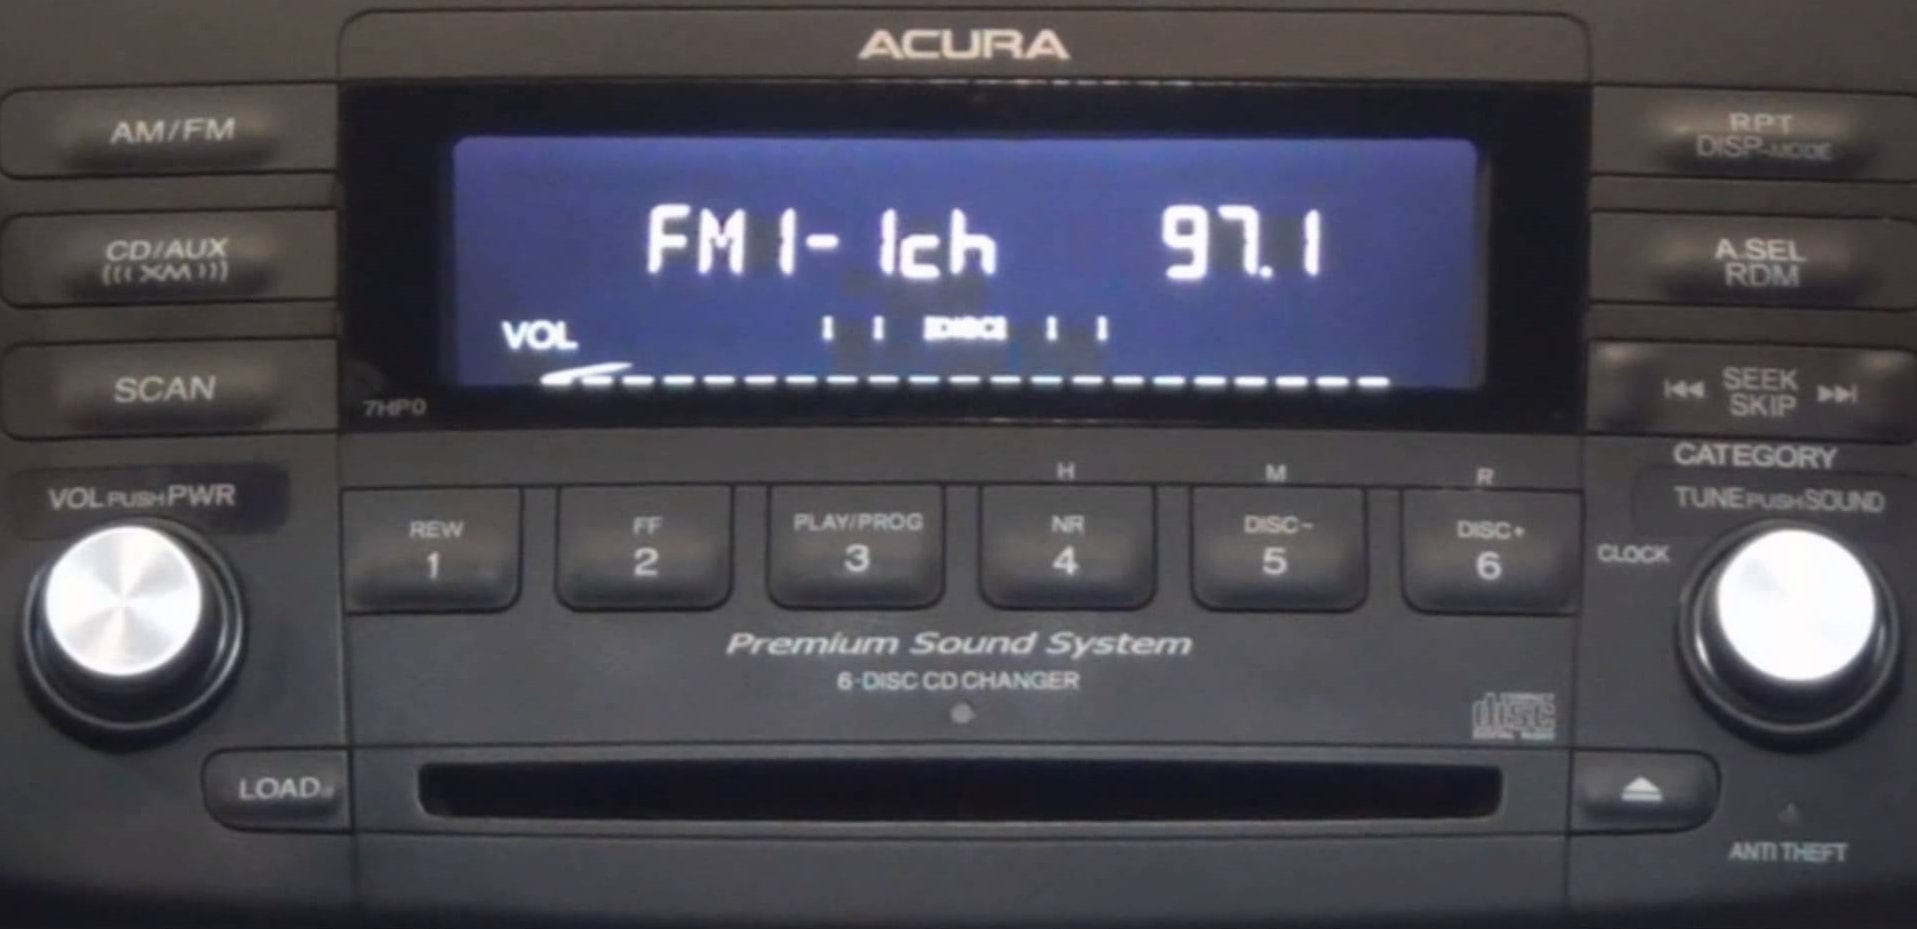 How To Enter Acura Radio Code